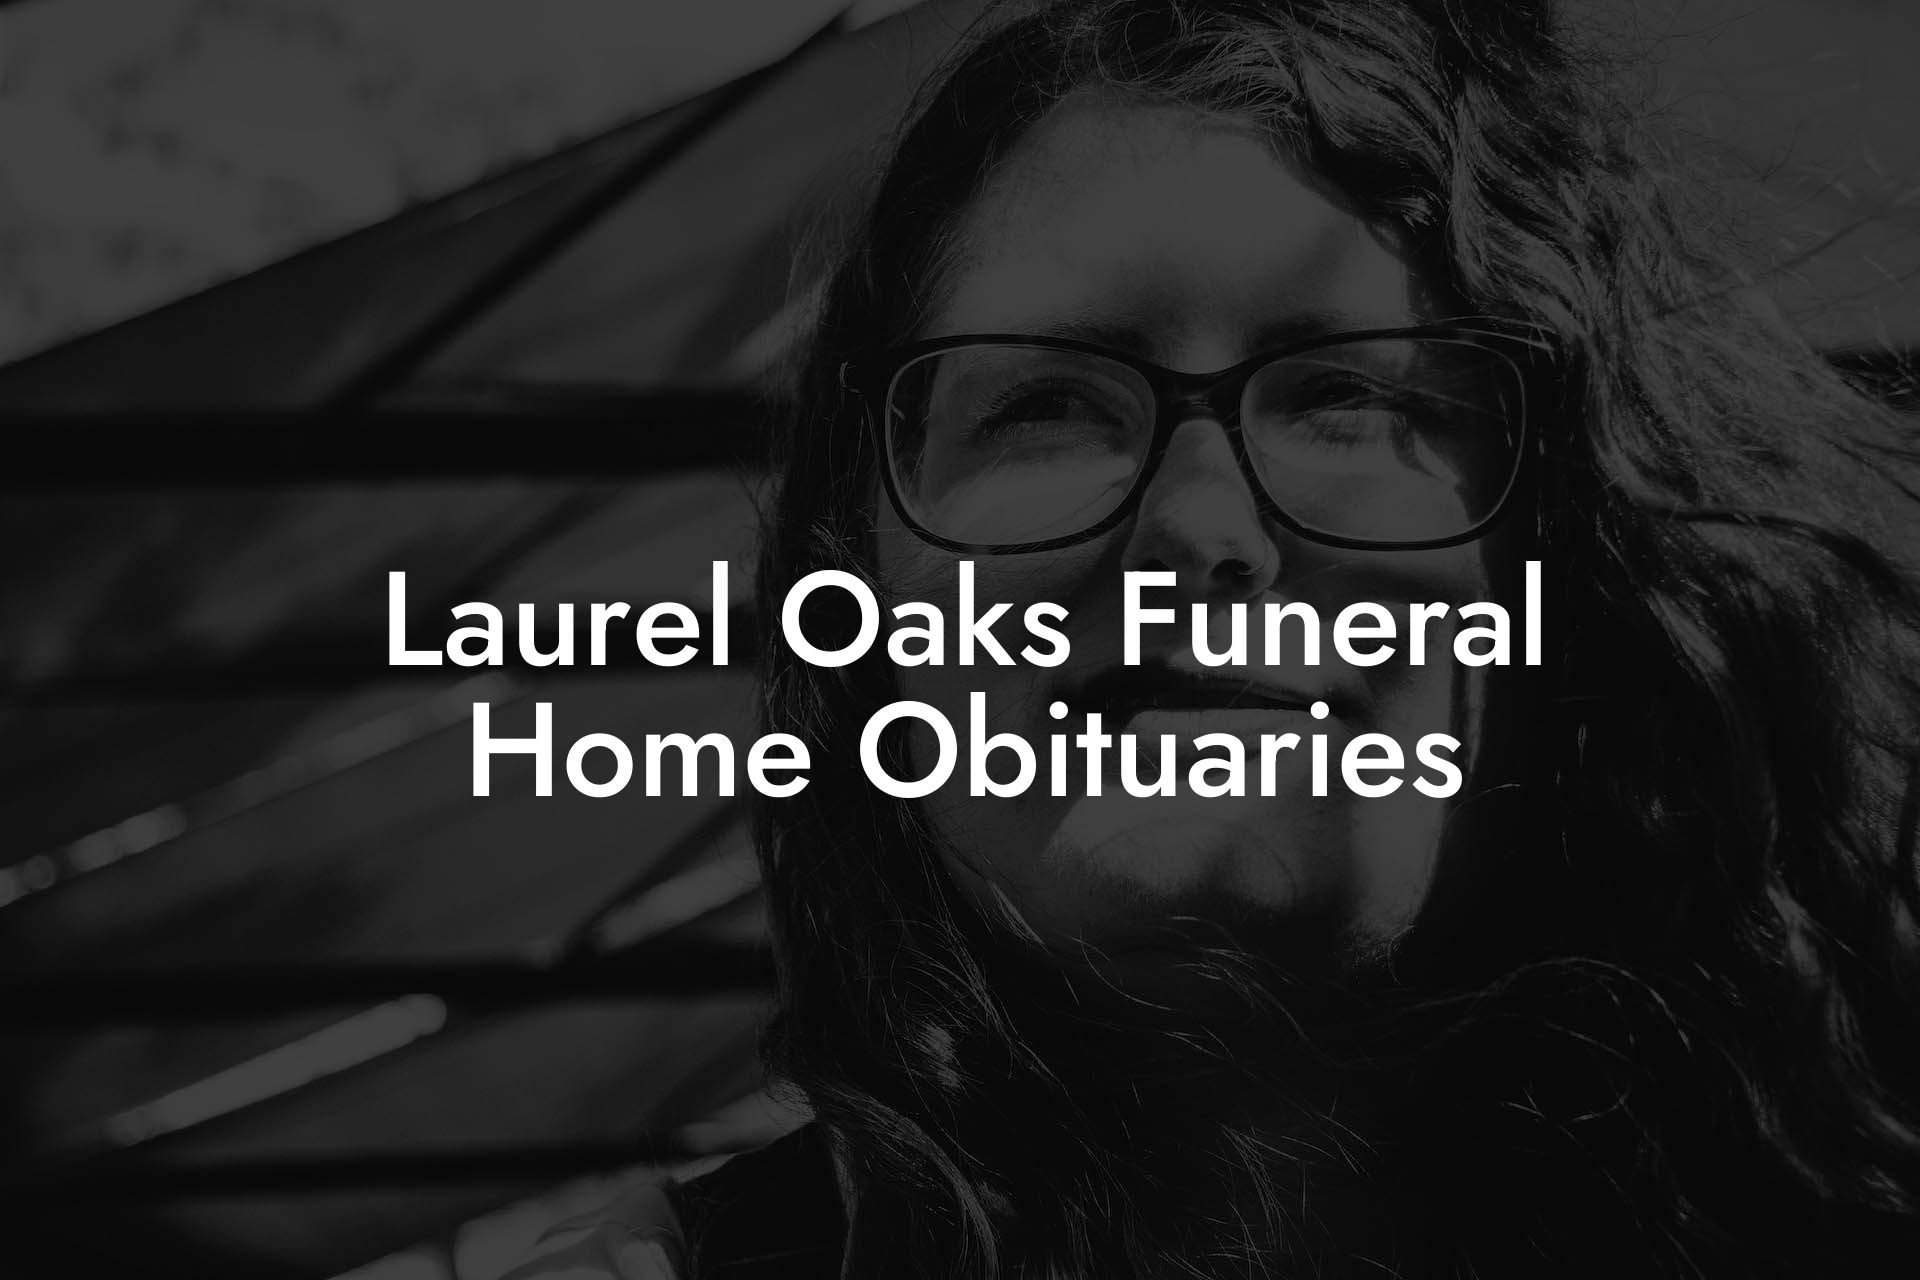 Laurel Oaks Funeral Home Obituaries